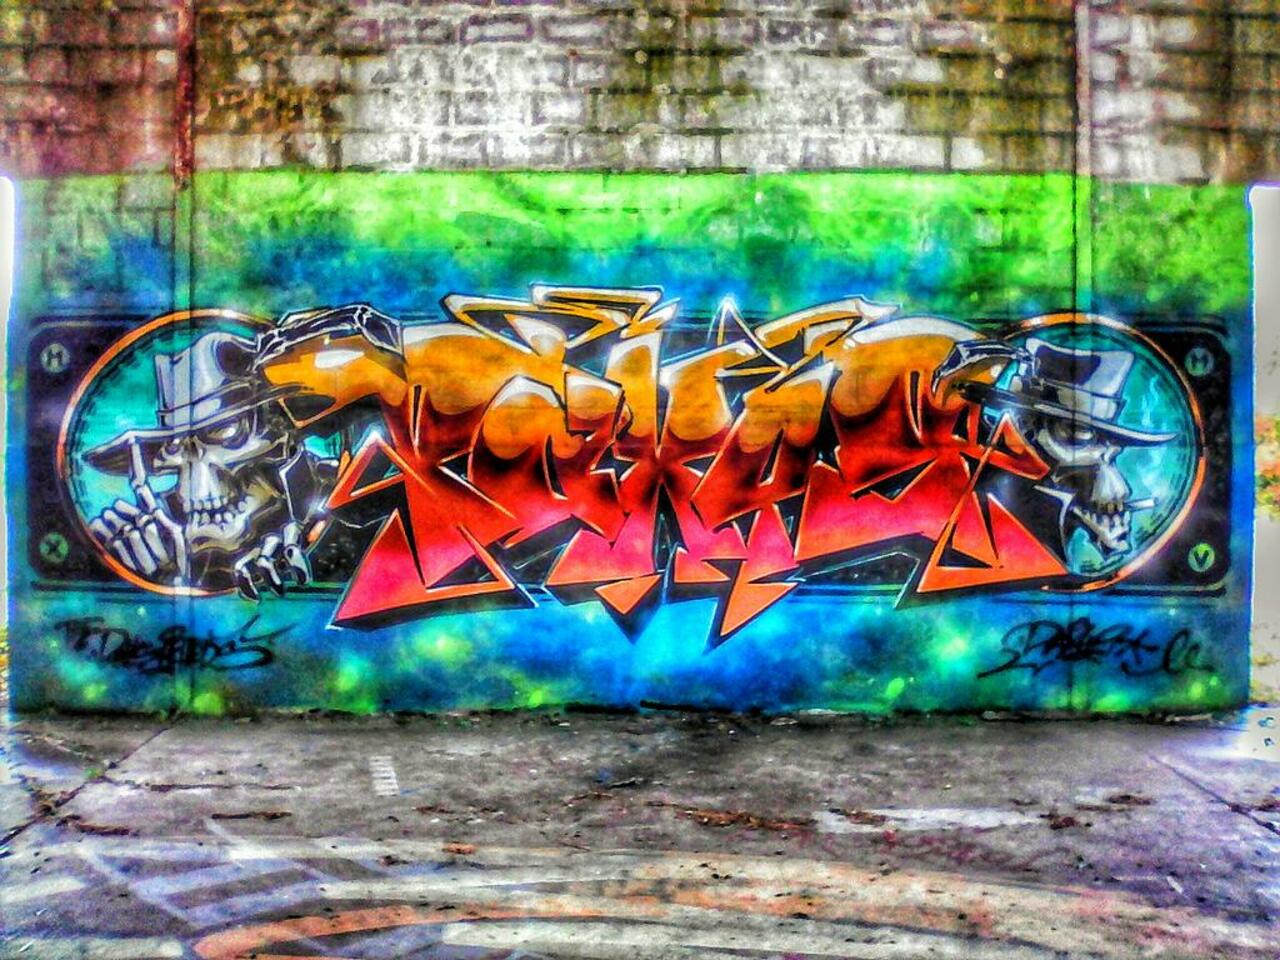 #Rennes #photo #graffiti #artderue #streetart https://t.co/3VVEpGVely